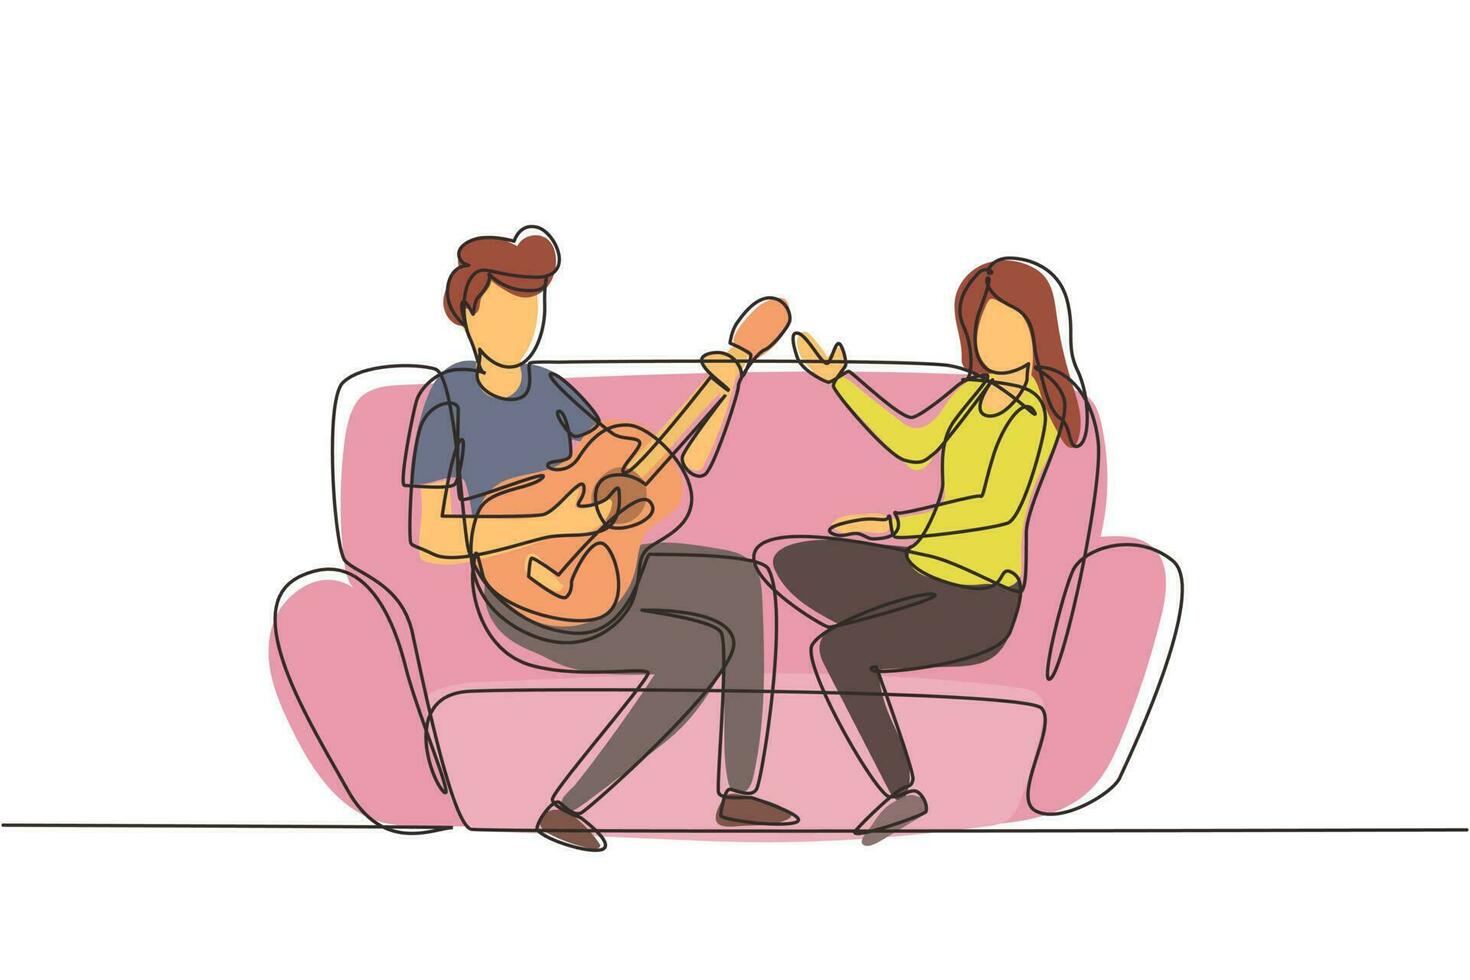 singola coppia di disegno a tratteggio insieme innamorata. ragazzo sta suonando la chitarra per la sua ragazza in soggiorno sul divano. ragazza ascolta e canta insieme. vettore grafico moderno di disegno di linea continua